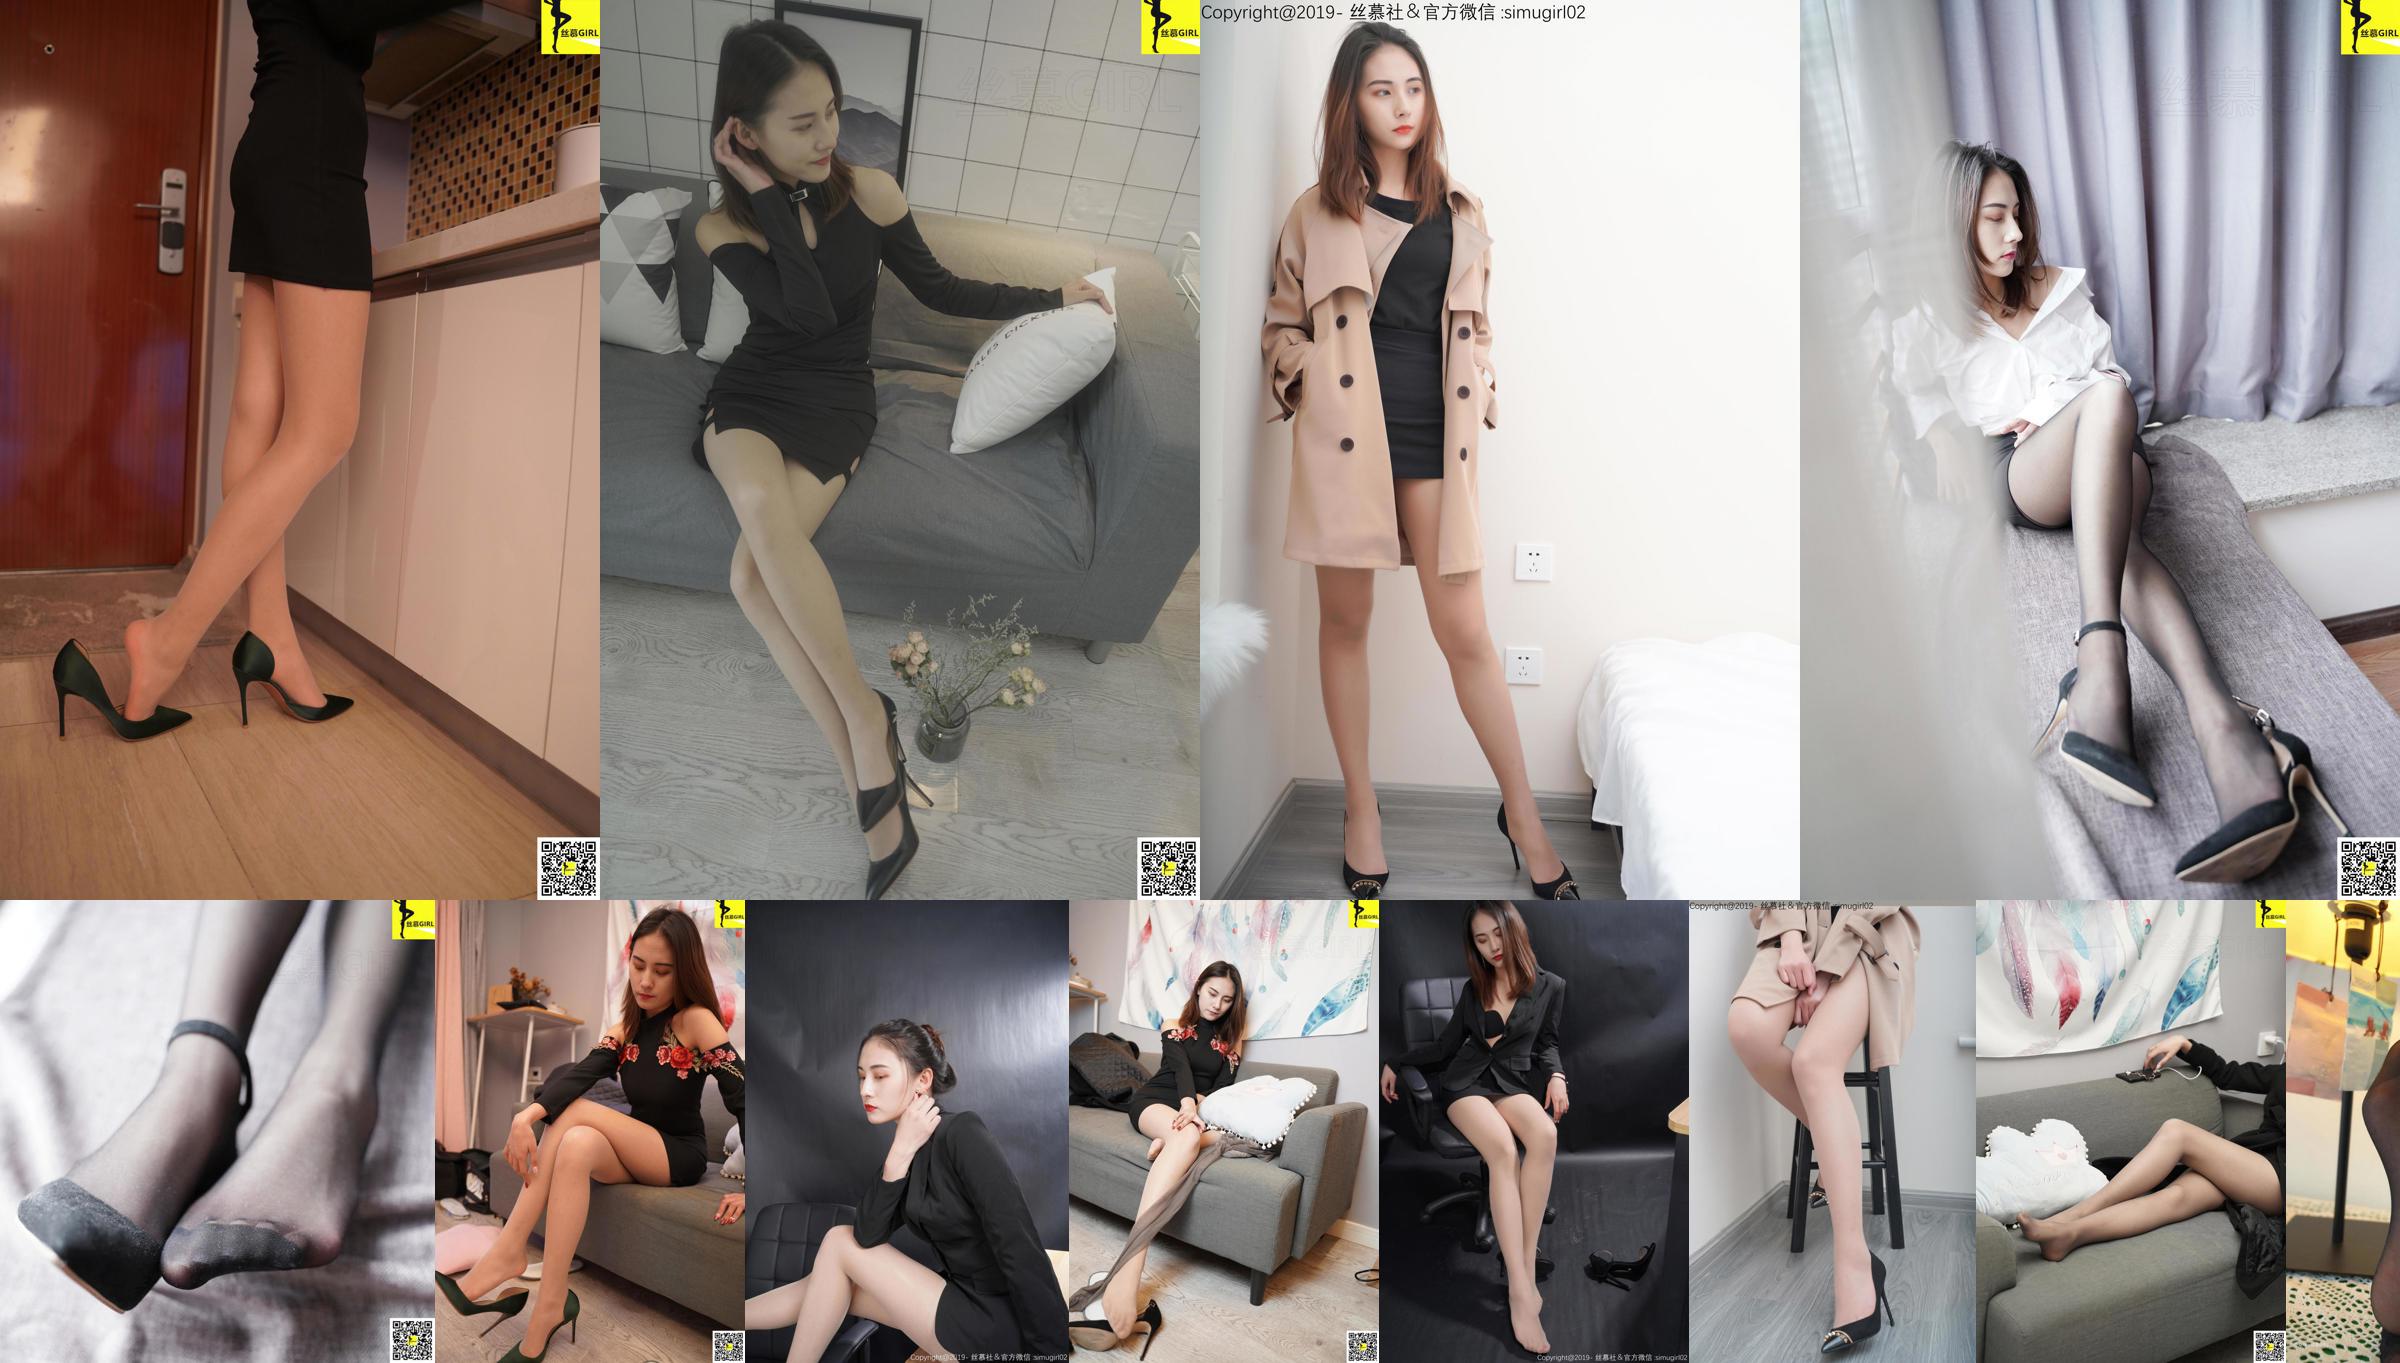 [Simu] SM006 Tingyi "Chefe feminina com pés bonitos" No.d96efa Página 12